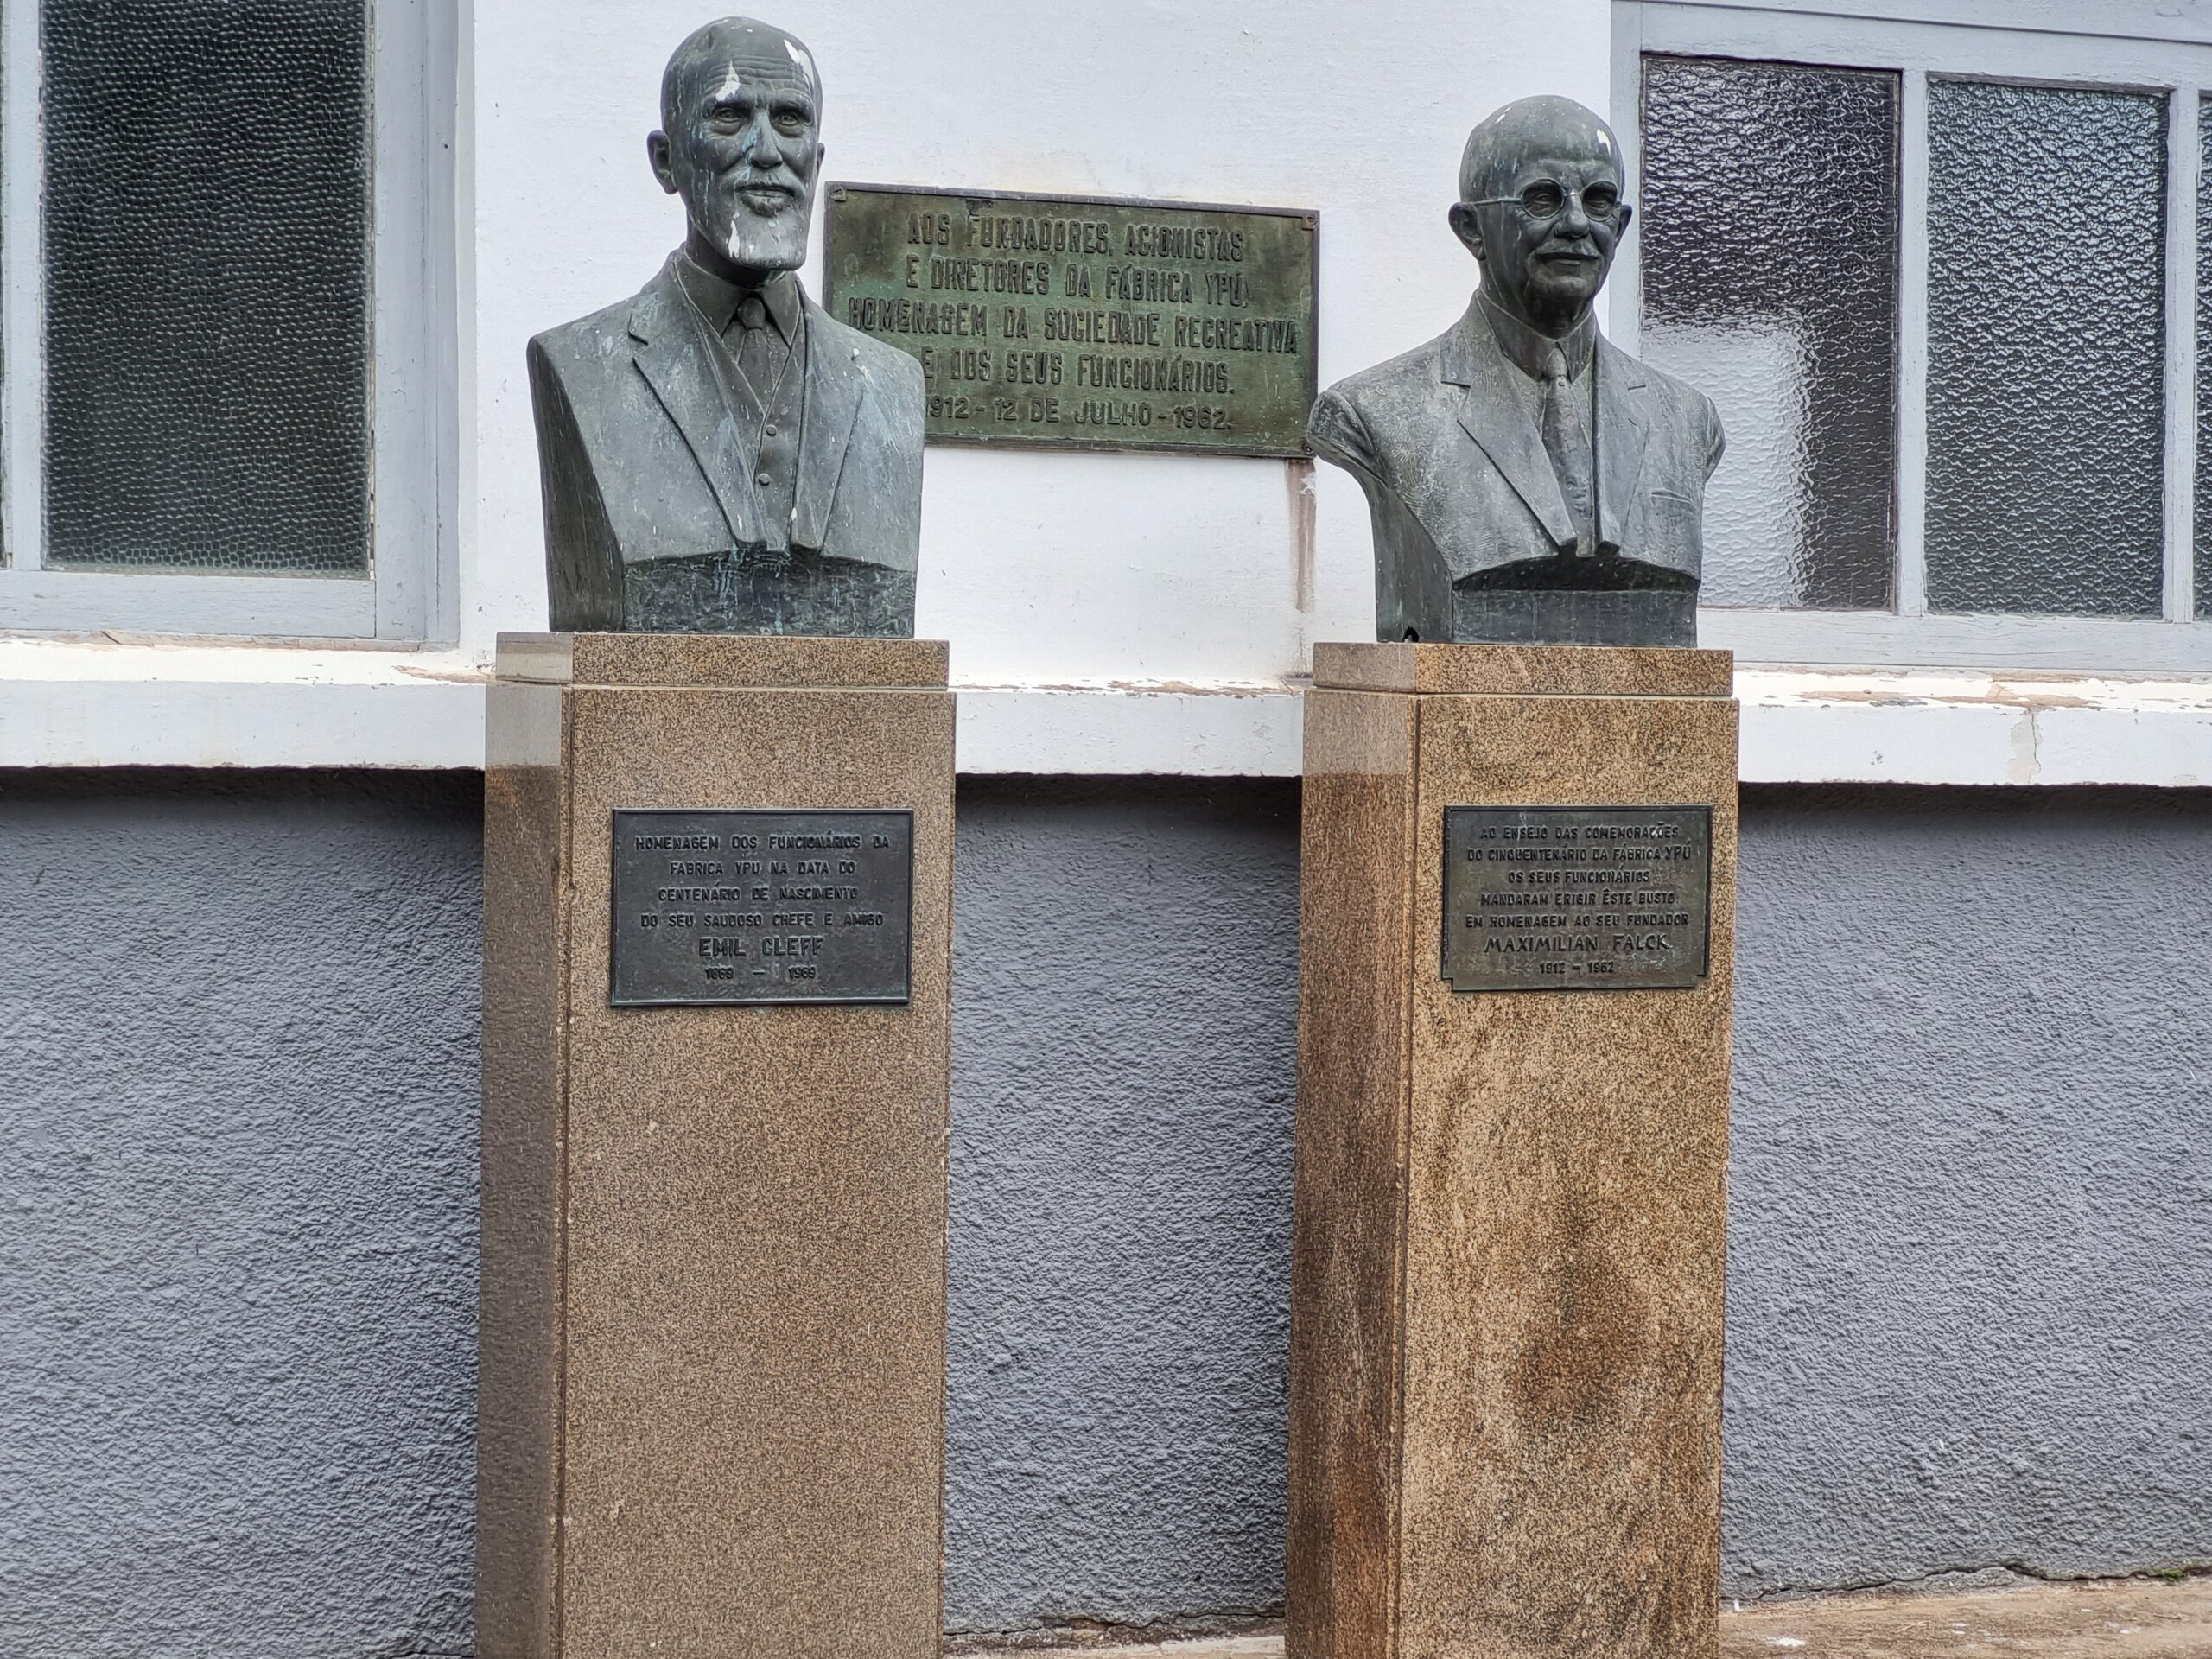 Os bustos de Emill Cleff e Maximilian Falck. Acervo pessoal